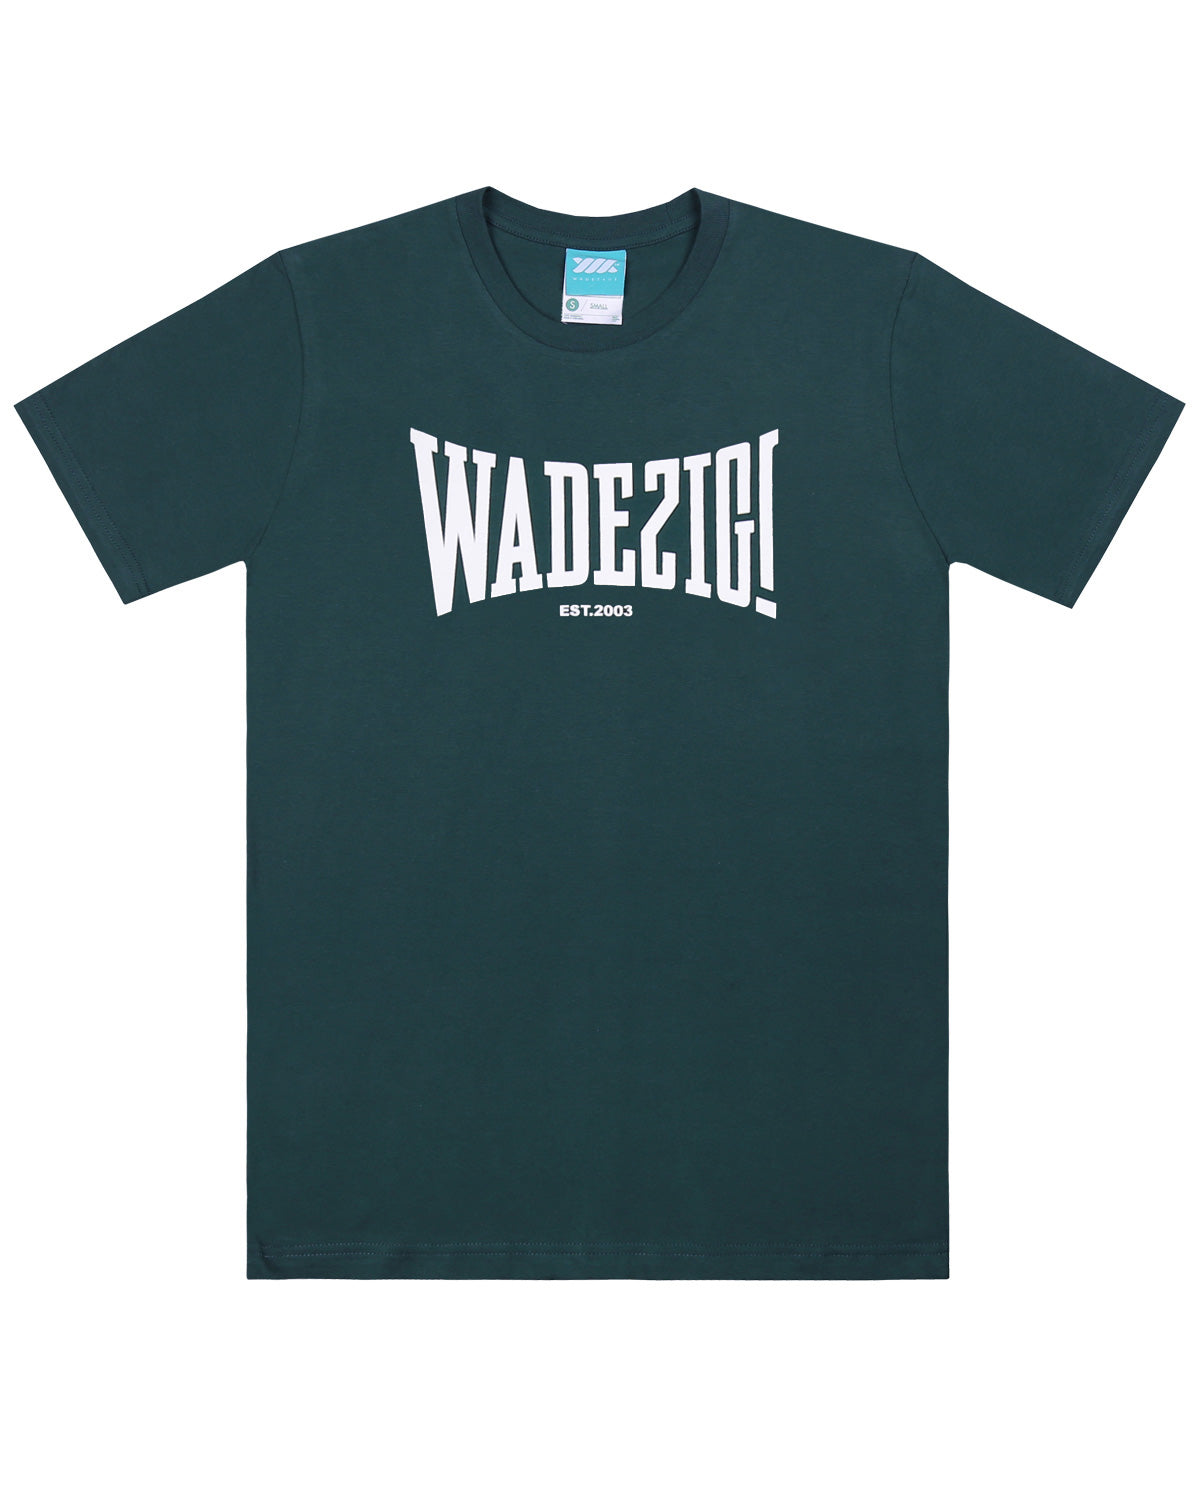 Wadezig! T-Shirt - Sport Green